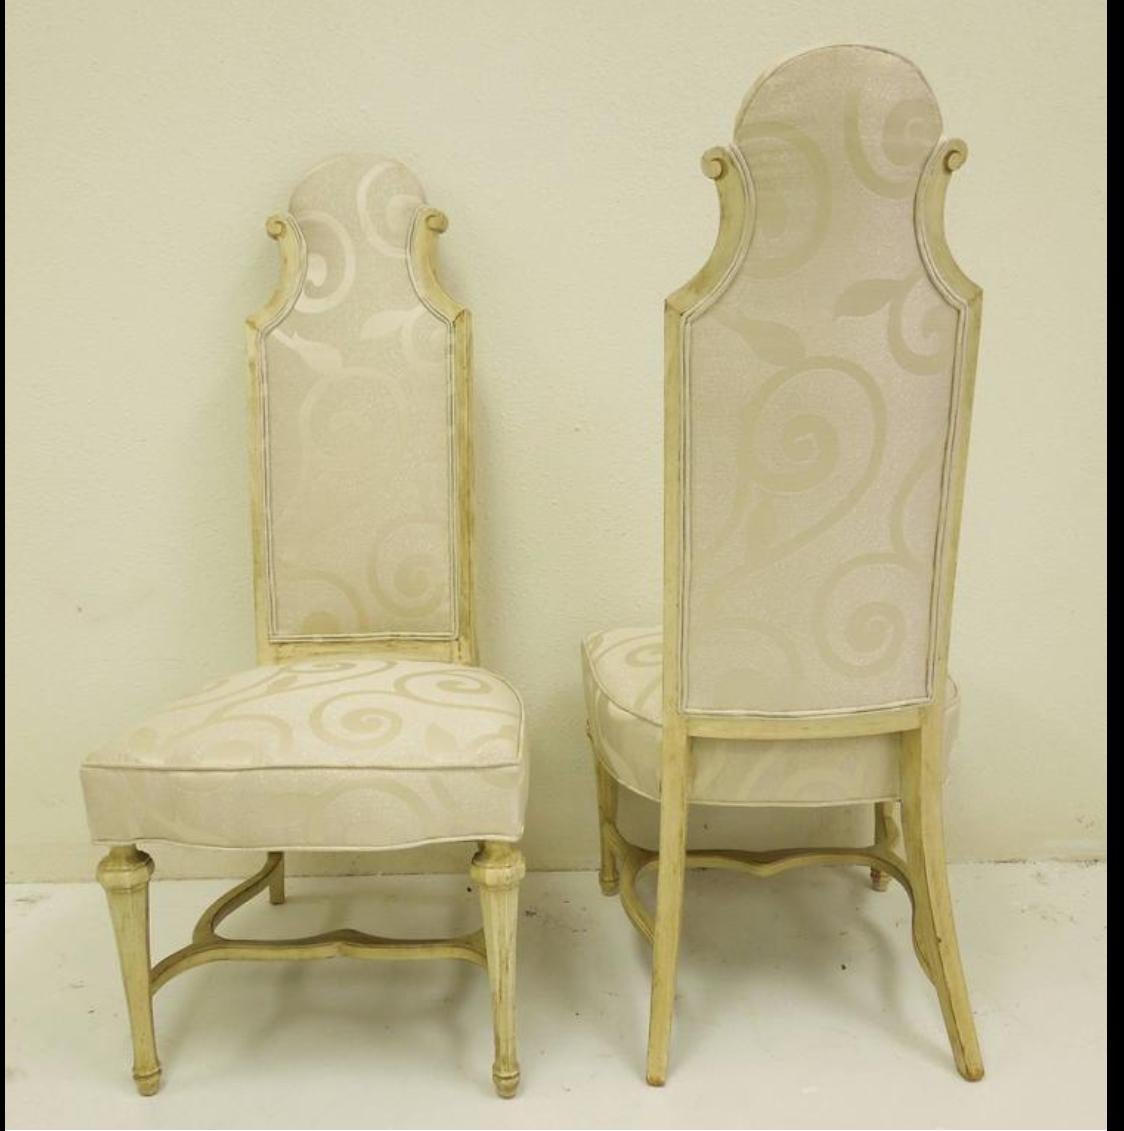 Ein wunderbares Paar Stühle im Hollywood-Regency-Stil mit hoher Rückenlehne. Neu gepolstert mit hochwertigem cremefarbenen Metallic-Swirl-Stoff. Erhält die ursprüngliche antike, cremefarbene Holzoberfläche. Aus einem alten Anwesen in Palm Springs,